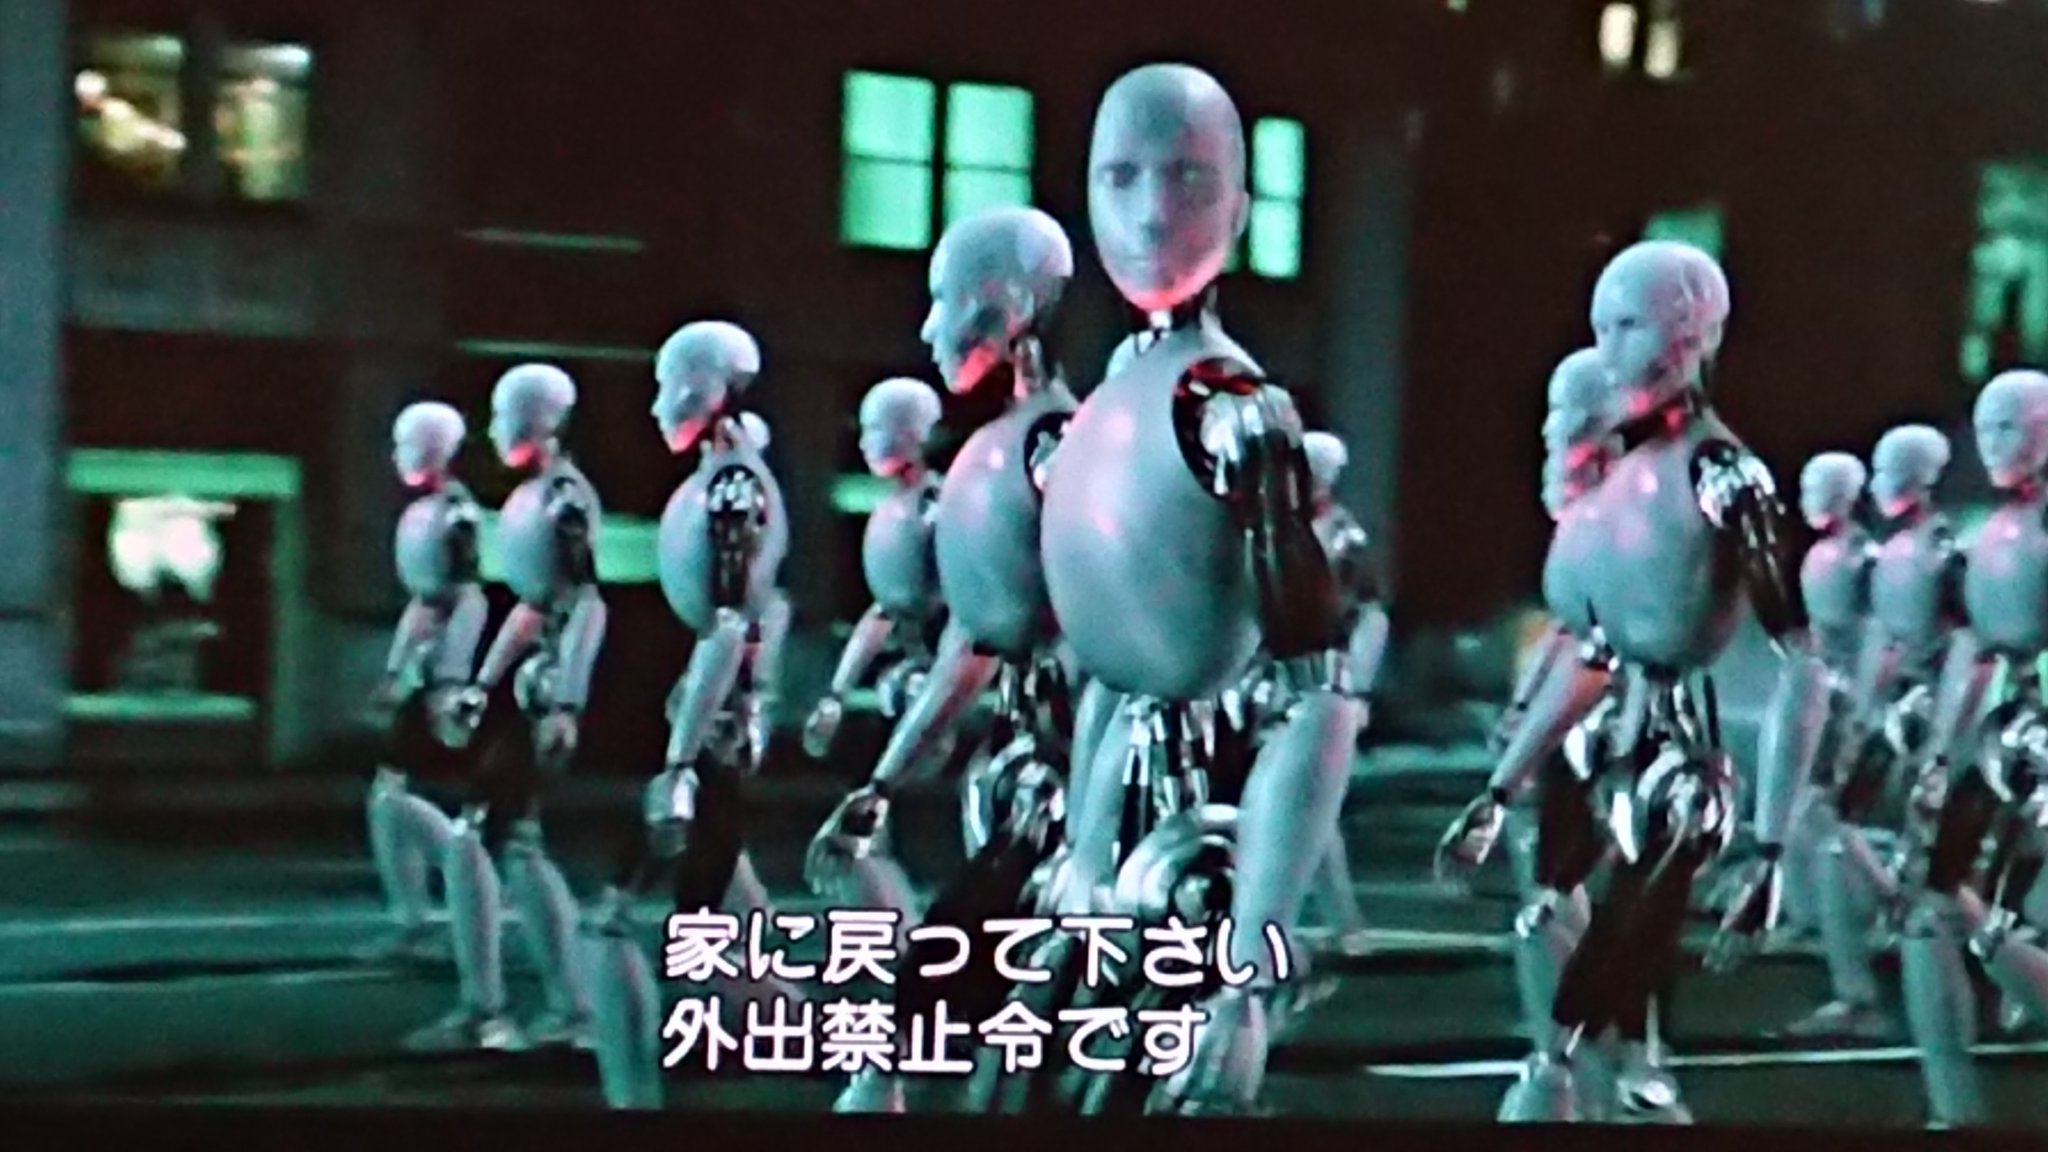 913 在 Twitter 上 アイロボット 1日1本オススメ映画 ウィルスミス主演 人間とロボットが共存する近未来 ロボット 工学の博士が殺される事件が起こり刑事のデルはロボットが犯人ではないかと疑う 最近でもゲームや特撮で近未来で人間に反乱を起こすロボットとか